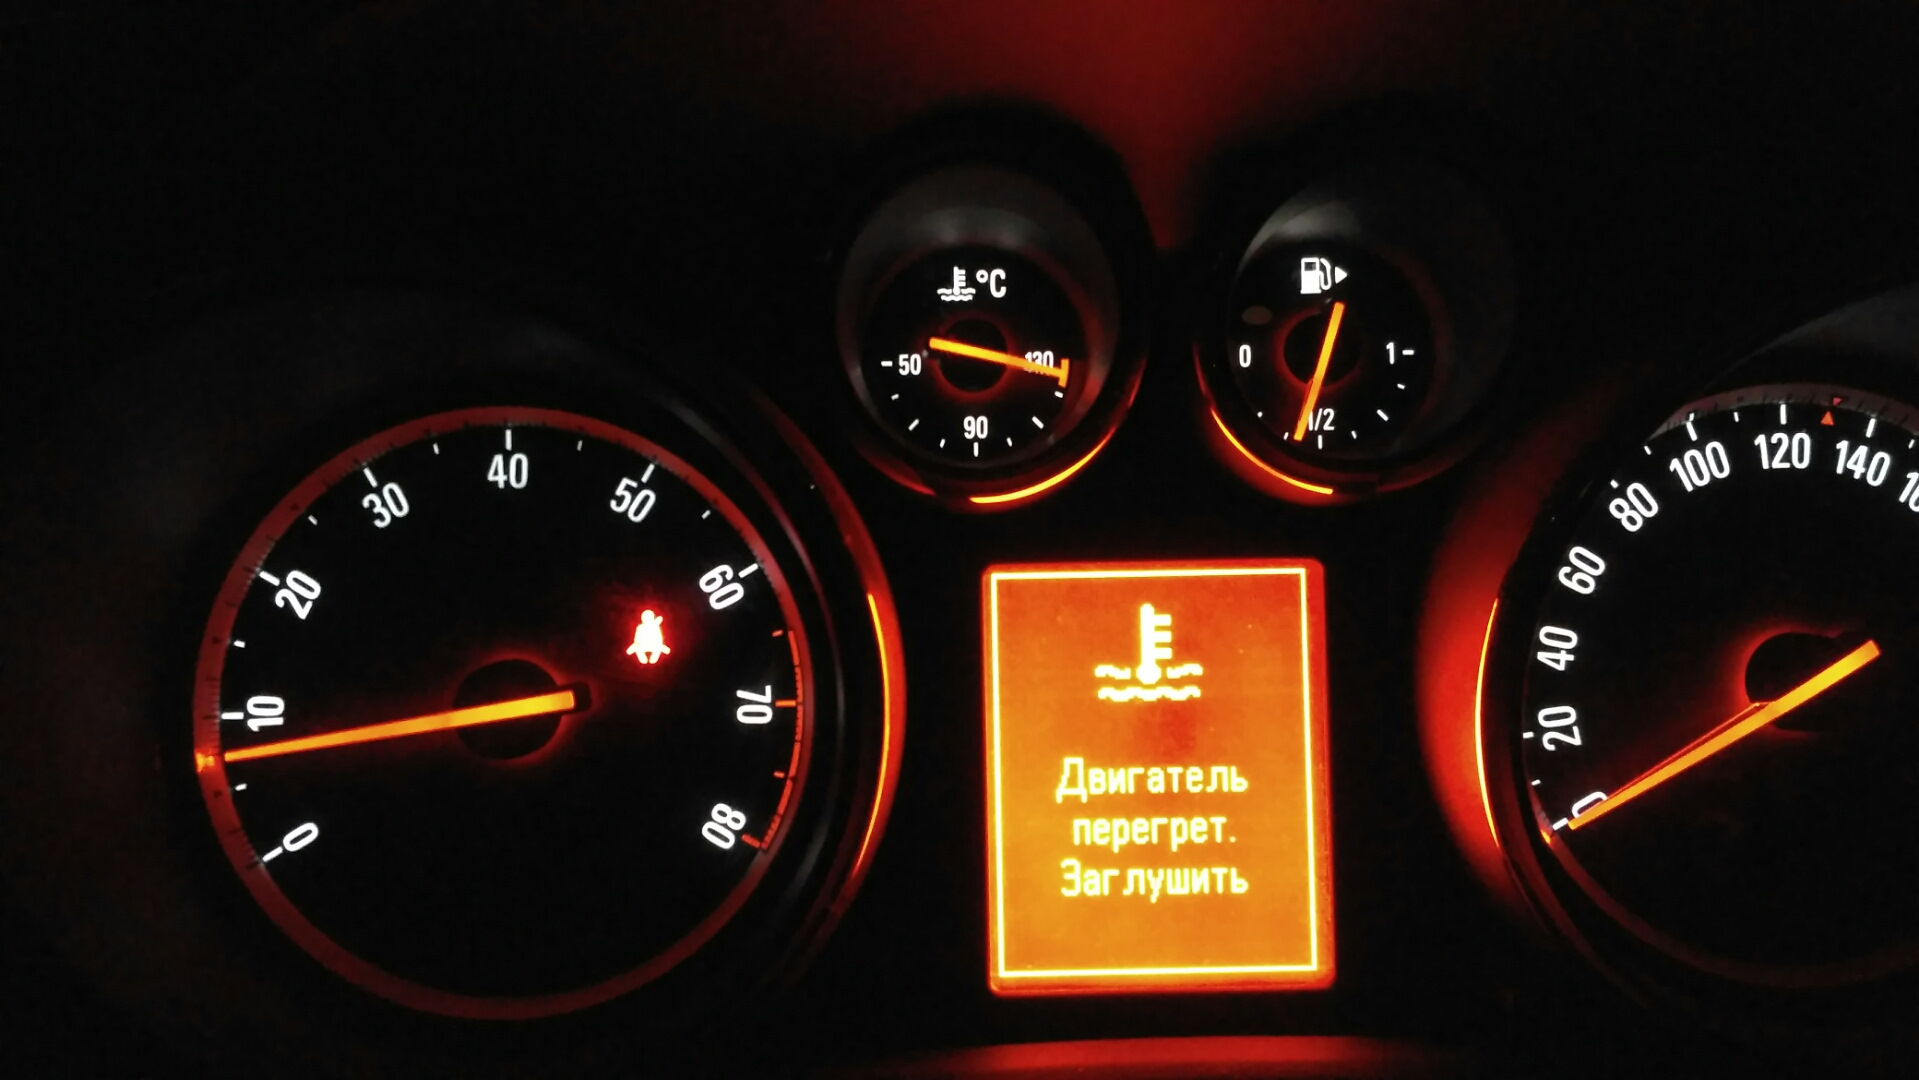 Зафира б температура двигателя. Датчик антифриза Opel Astra j. Датчик температуры Astra j 1.6.